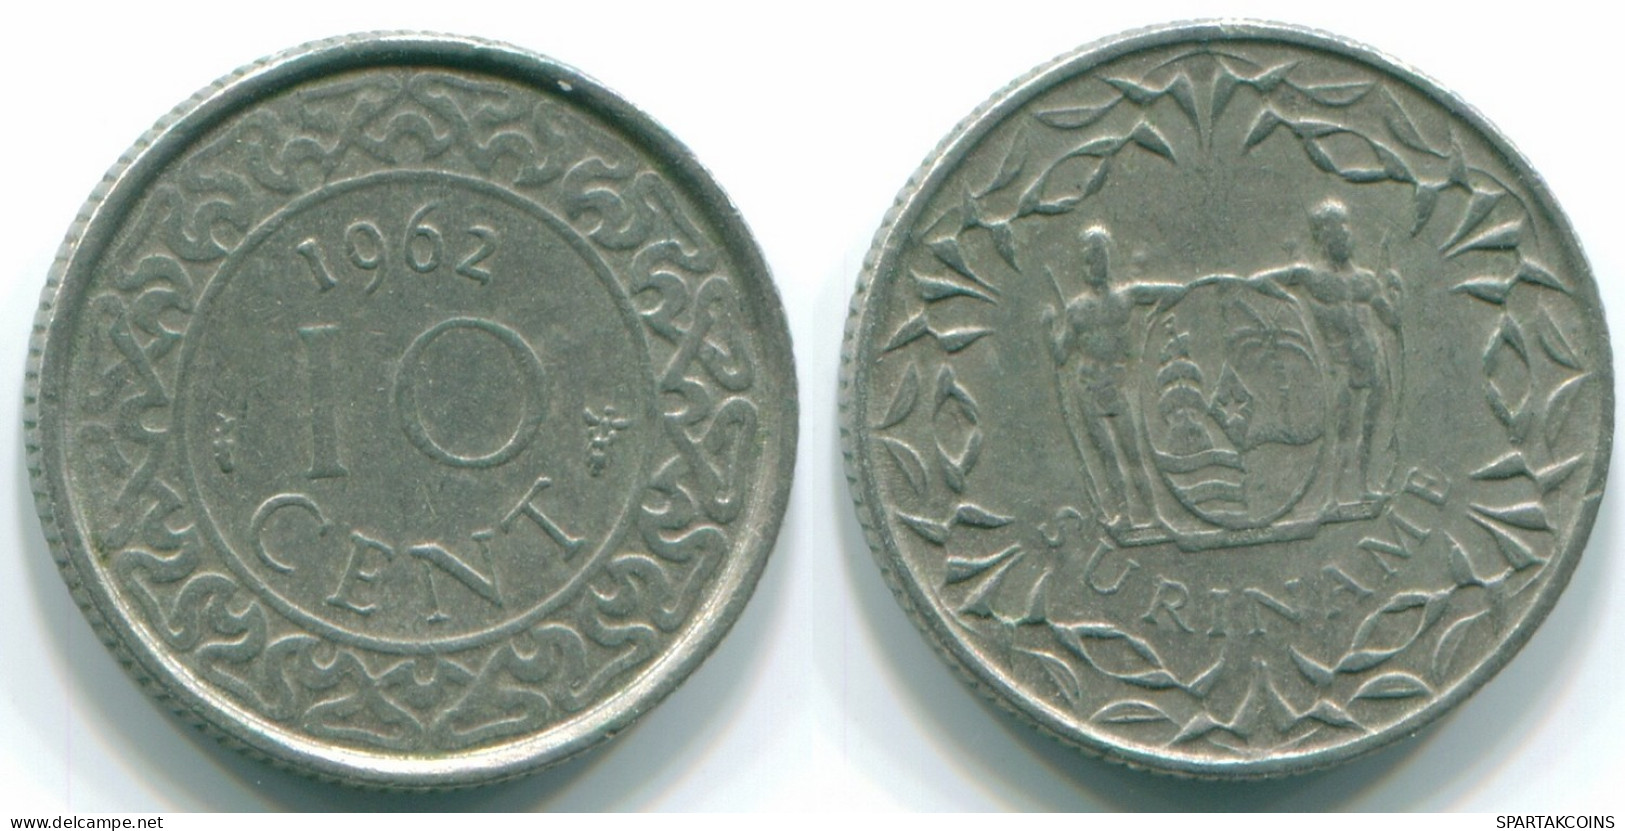 10 CENTS 1962 SURINAM NIEDERLANDE Nickel Koloniale Münze #S13222.D.A - Surinam 1975 - ...